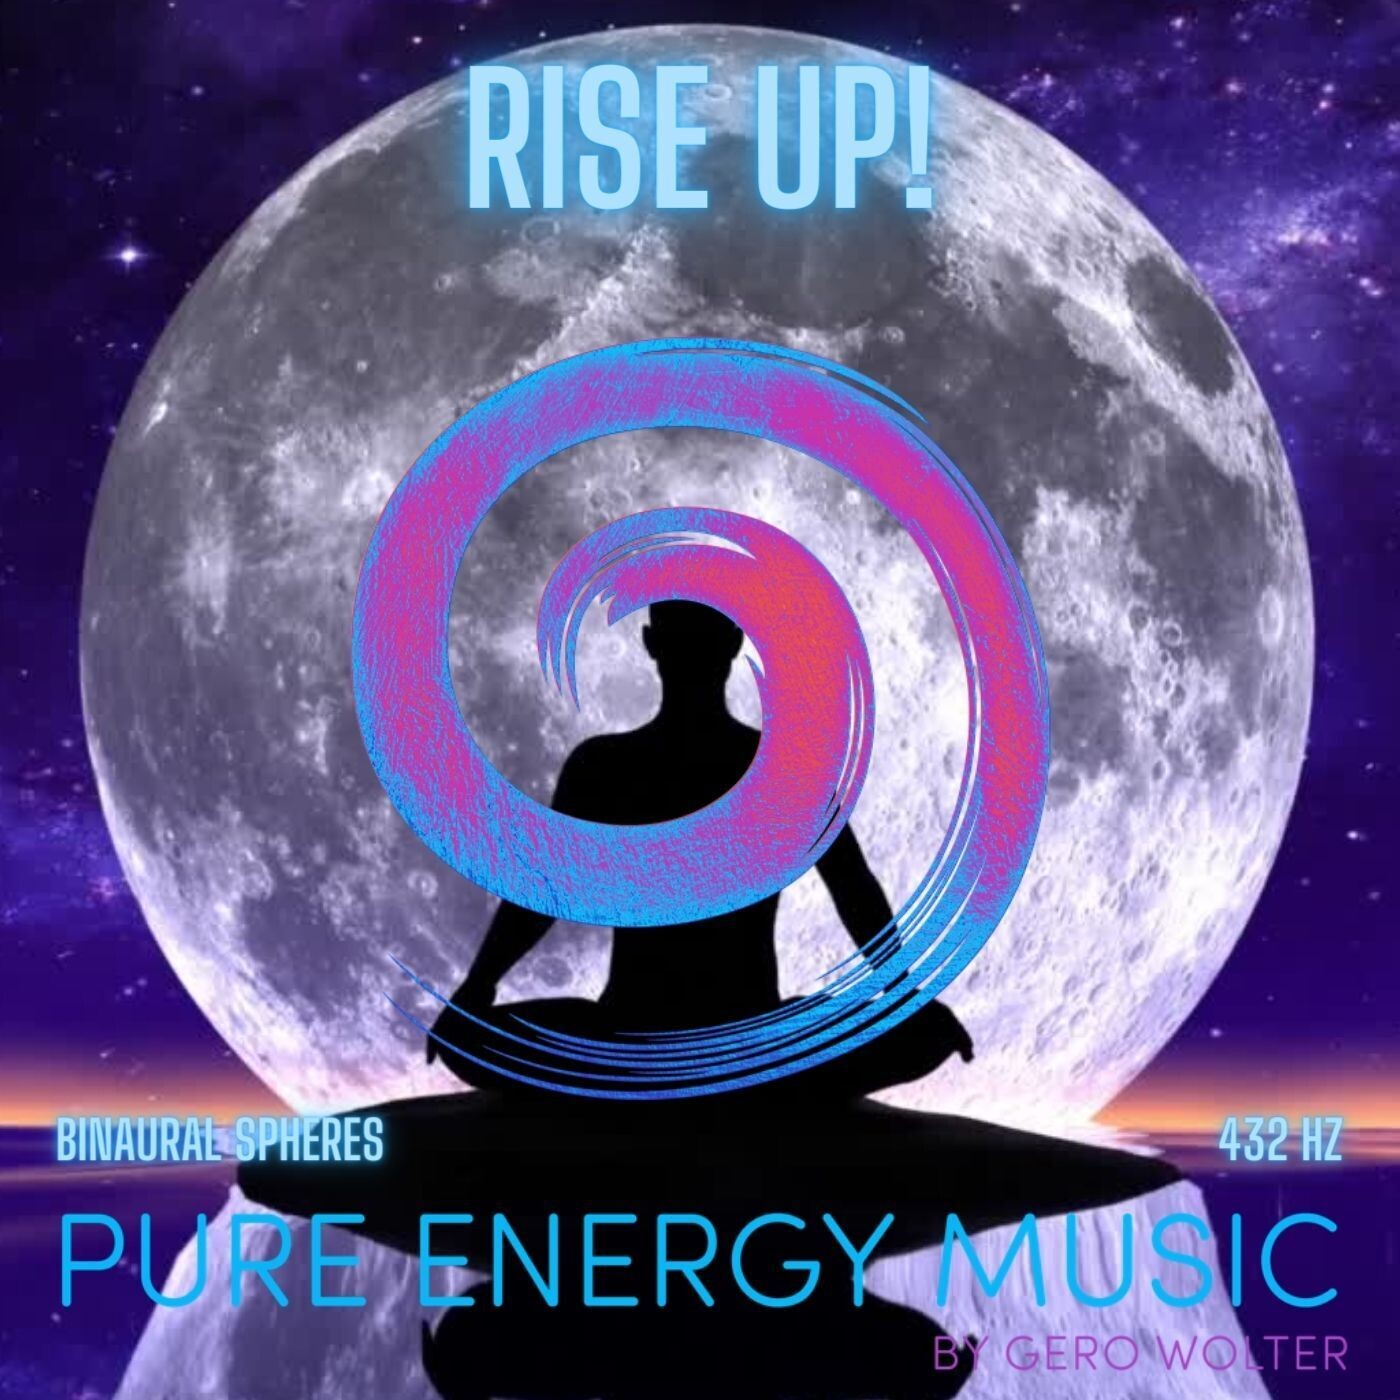 EP "Rise up!" MP3 | nach dem Kauf senden wir dir innerhalb 24 Stunden deinen persönlichen Download Link zu.